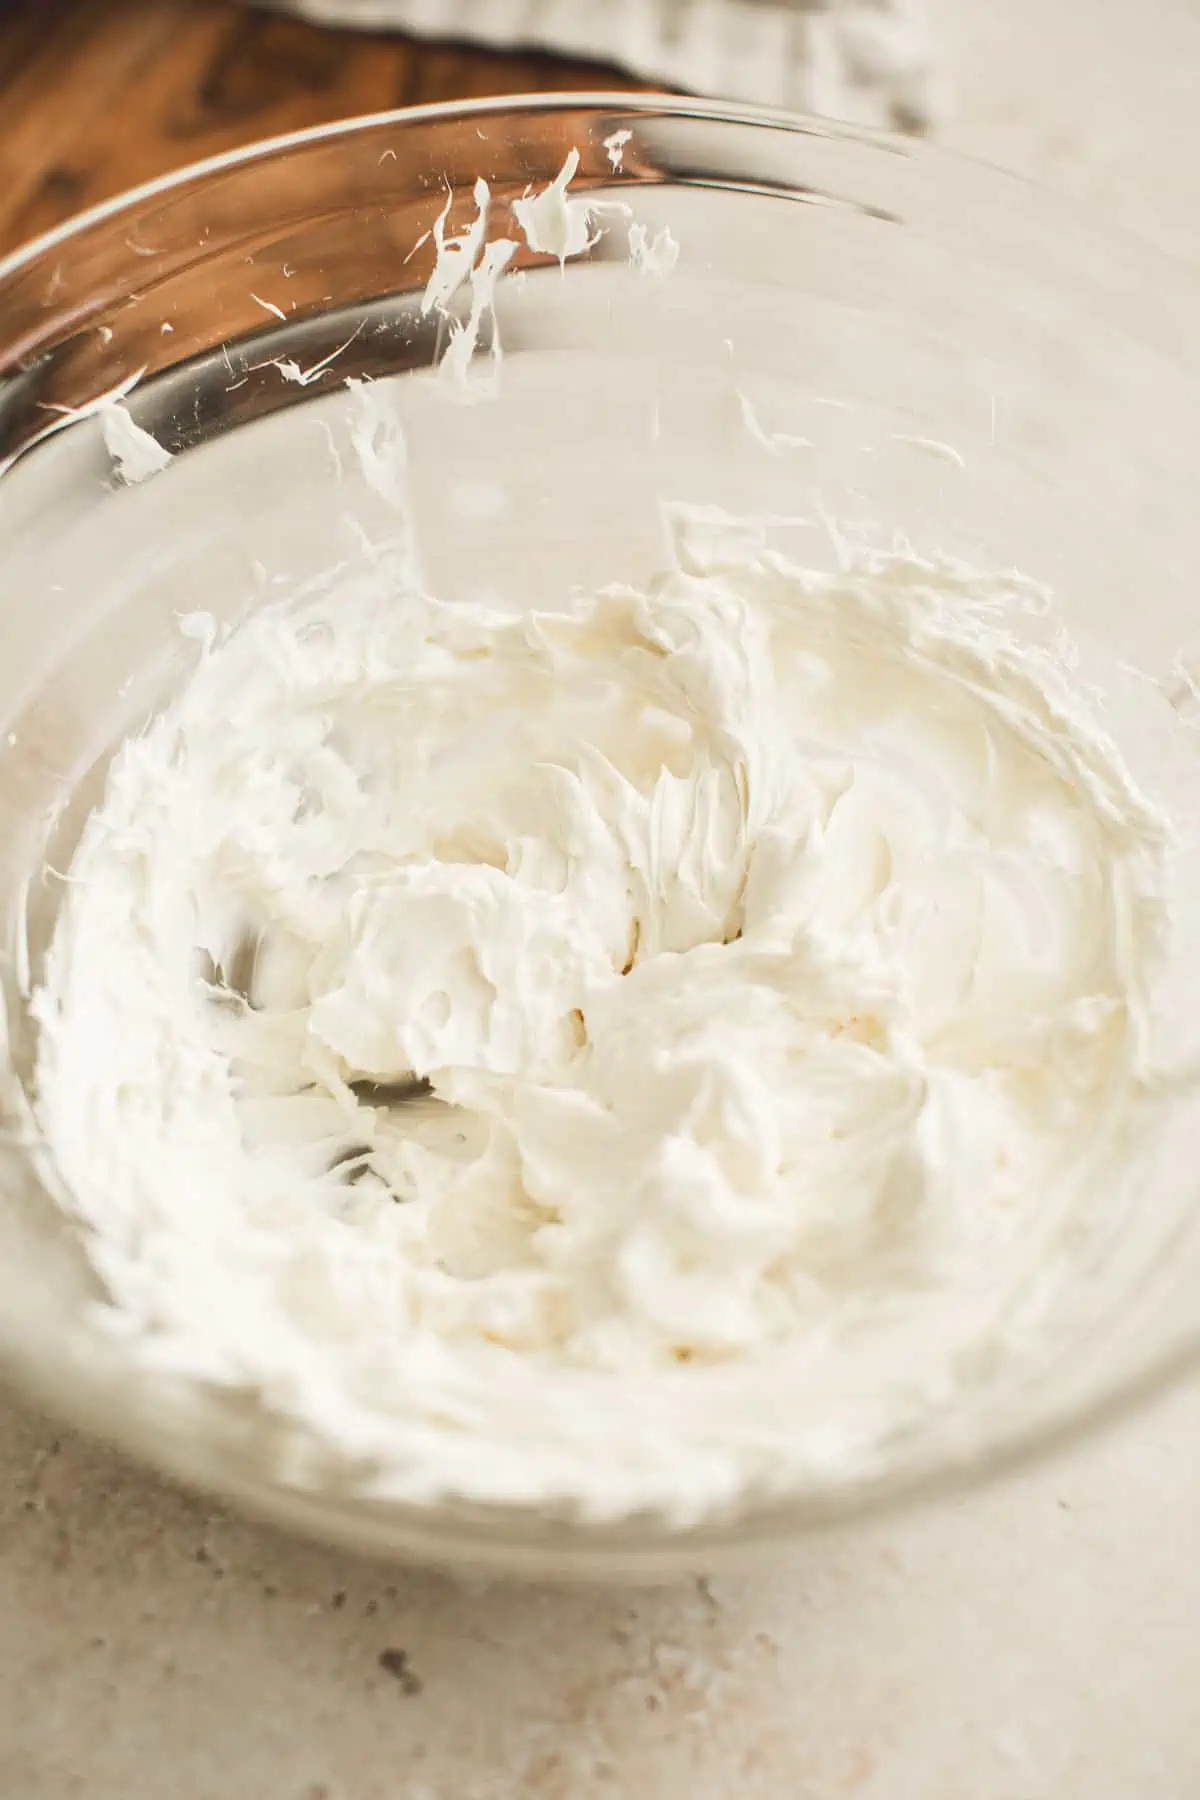 Beaten cream cheese for making clam dip.